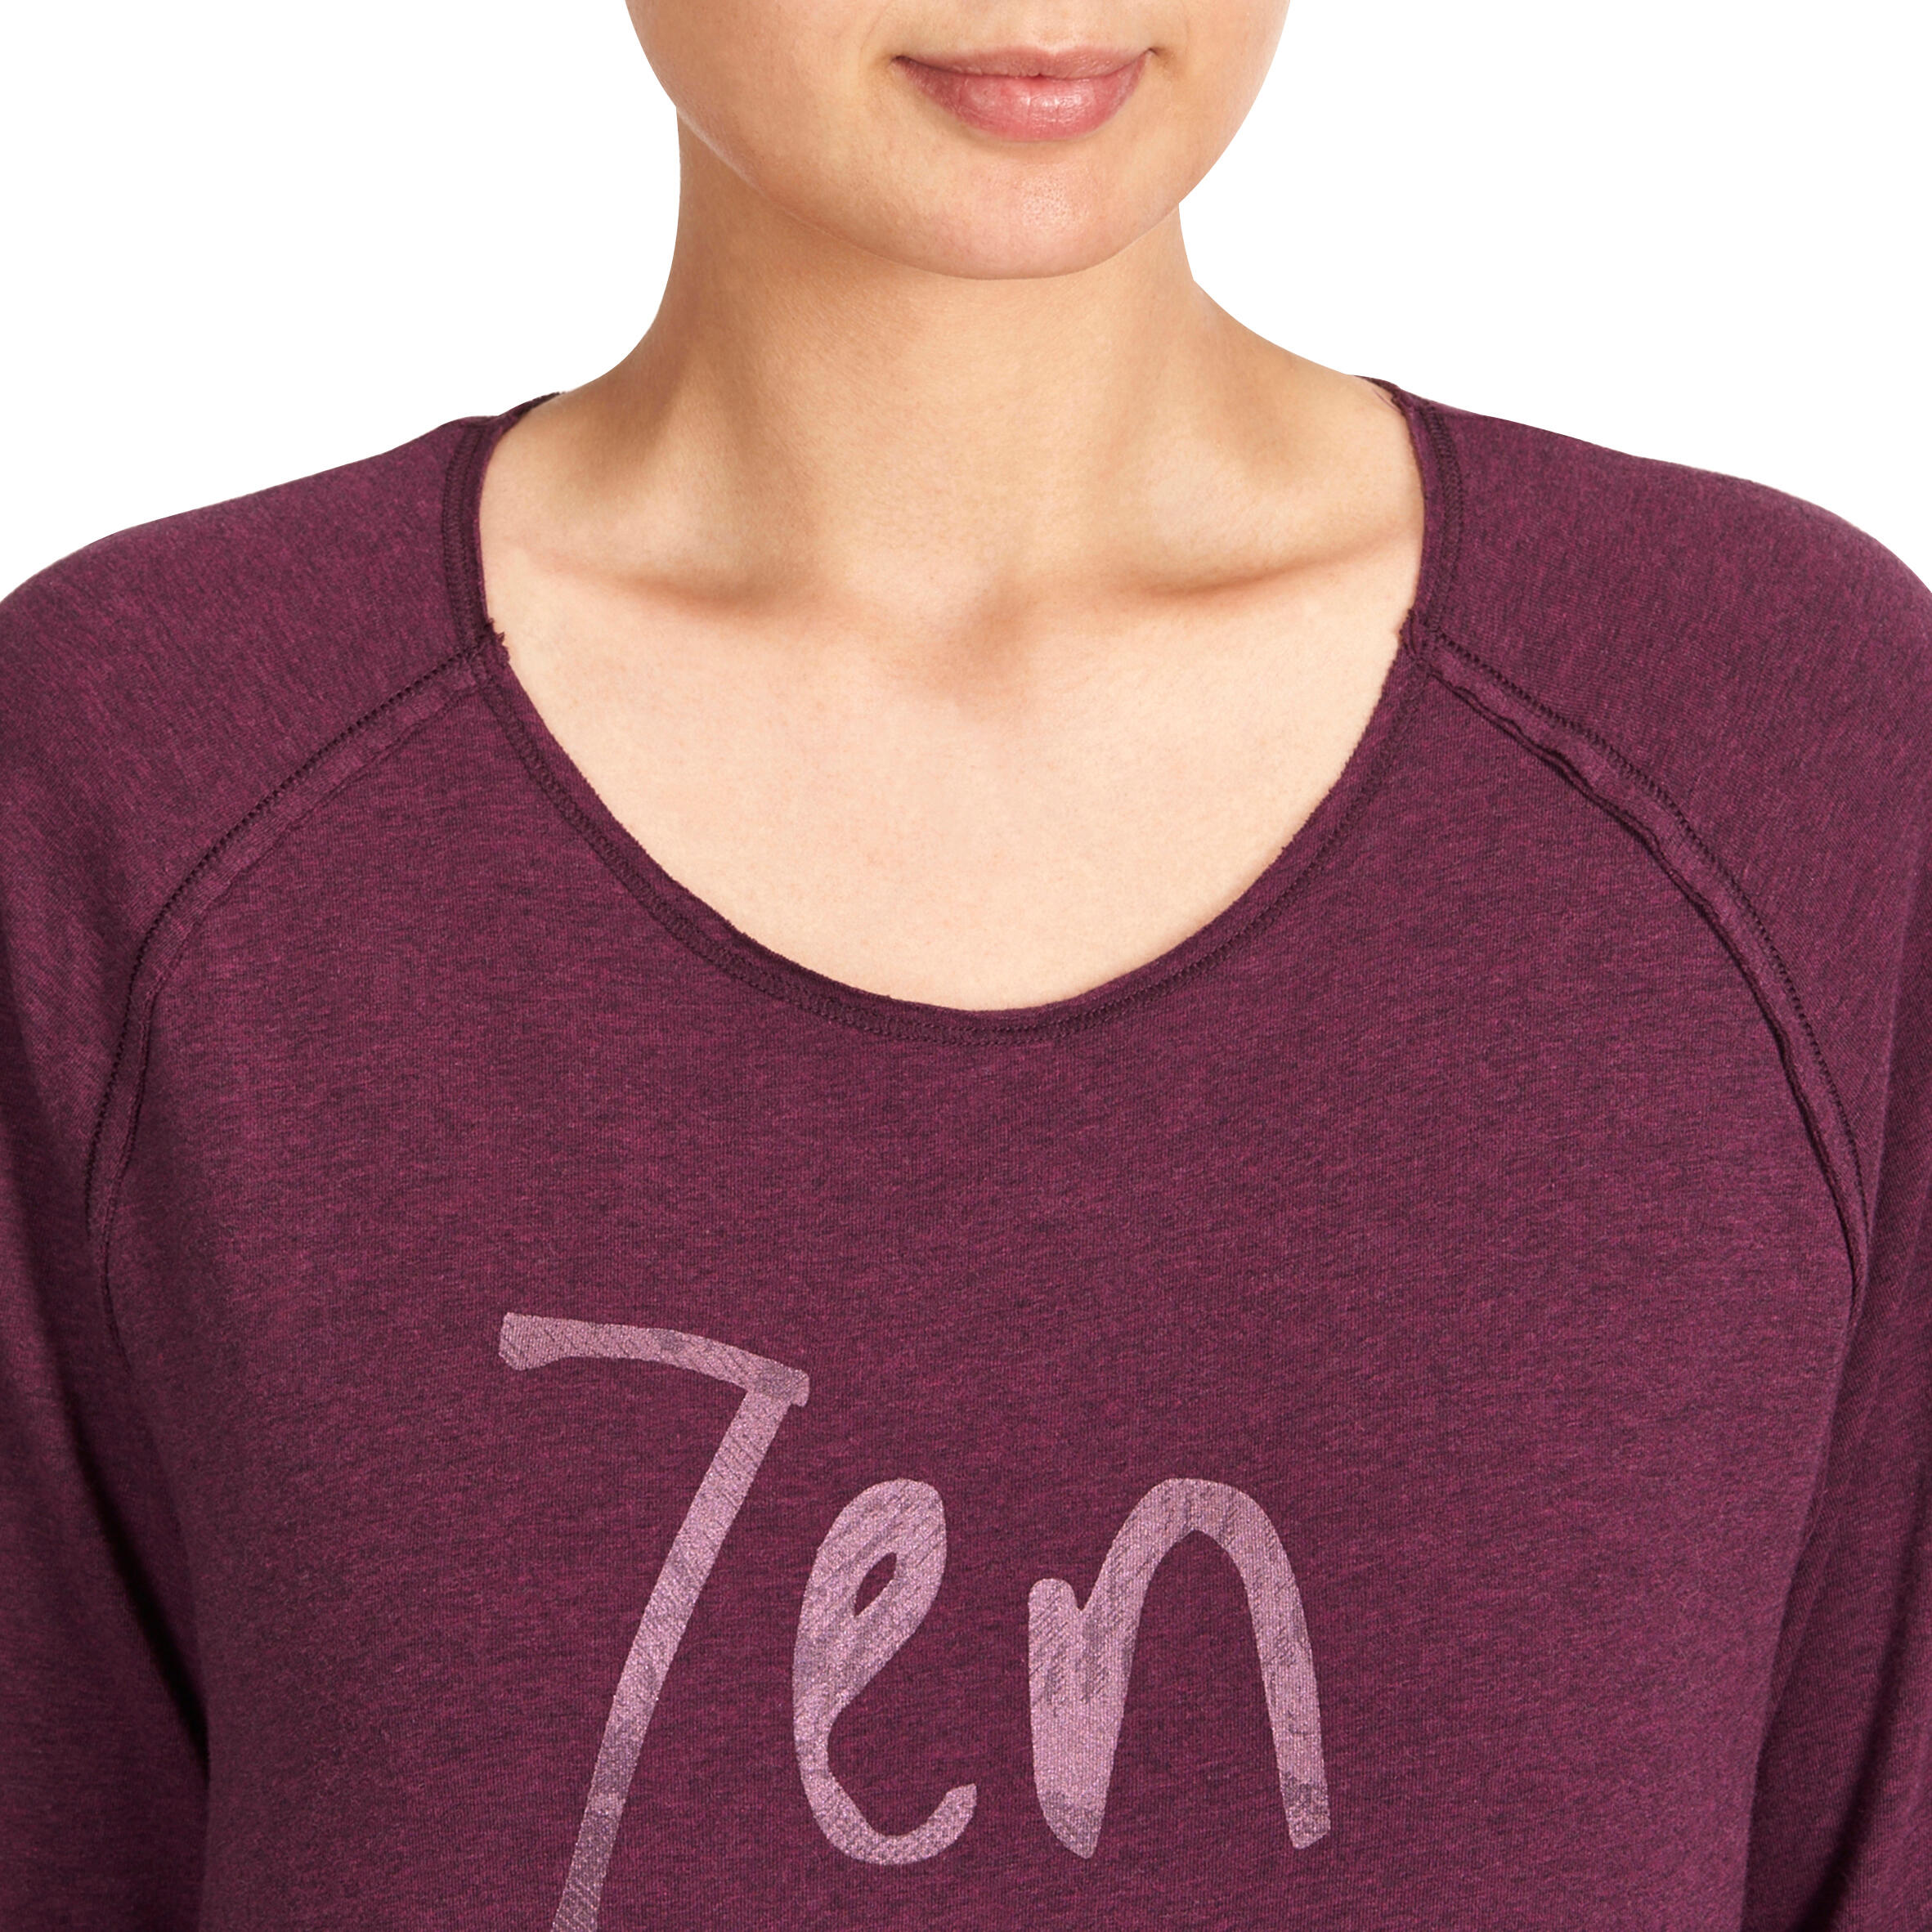 Women's Organic Cotton Long-Sleeved Yoga T-Shirt - Mottled Burgundy 5/12